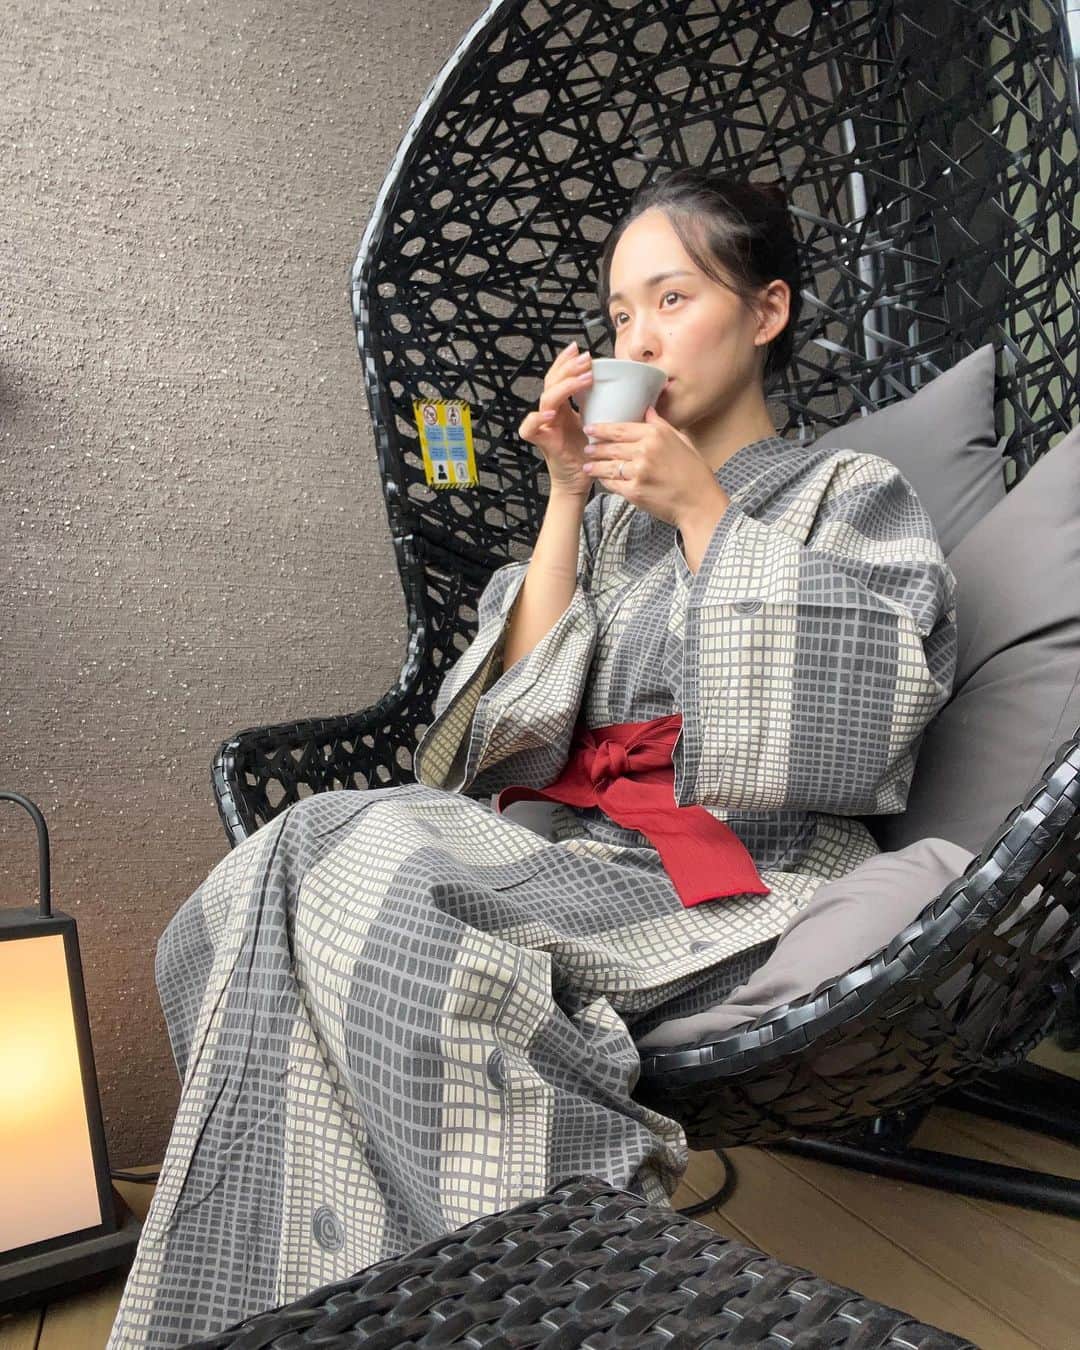 坂野志津佳のインスタグラム：「旅先でもヨガコーヒー☕️ @yogacoffee.jp  ⁡ ⁡ 先日家族で箱根旅行に行きました！ ⁡ アンバサダーをさせていただいているヨガコーヒーを持って行き、旅先でもいつもの味でほっと一息☺️🌿 ⁡ 箱根の綺麗な景色を眺めながら、温泉の後のコーヒーは最高でした😆 ⁡ ⁡ ⁡ ⁡ ⁡ ヨガとコーヒーが大好きで、 ヨガもコーヒーも深みがあっておもしろい。 ⁡ どちらもリラックスできるもので、どこか似ているような感覚があります。 ⁡ お金をいただいているわけでもなくシンプルに、ヨガとコーヒーの素晴らしさをいろんな人に知ってもらいたい！という思いで、3期続けて今月からもアンバサダー継続をさせていただきました😊 ⁡ ⁡ ヨガとコーヒー好きな仲間のみなさん、よろしくどうぞ〜！！ ⁡ ⁡ ⁡ 〜〜〜〜〜〜〜〜〜〜〜〜〜〜〜〜〜 ⁡ ［イベントレッスン］ ⁡ ■「マインドフルネスヨガとティータイム」 10月21日(土) 13:30〜15:00→🈵キャンセル待ち 12月16日(土) 13:30〜15:00→残3名 𖥣ブライトンスタジオ代官山 @brighton_studio_daikanyama  ⁡ ■「親子ヨガ」 11月25日(土) 10:30〜11:30 𖥣恵比寿カルフールスタジオ @ebisu_.carrefour  ⁡ ⁡ ［レギュラークラス］ ⁡ □毎週月曜日 12:00〜13:15 「リラックスフローヨガ」(マタニティー可) 𖥣ヨガスタジオgllow 二子玉川 ⁡ □毎週火曜日 8:15〜9:15 「朝ヨガ」 𖥣ヨガスタジオgllow自由が丘 ⁡ □毎週木曜日 12:00〜13:15 「リフレッシュヨガ」(マタニティー可) 𖥣ヨガスタジオgllow二子玉川 ⁡ @yogagllow   ⁡ ※詳細・予約はトップページにリンクしています。 ⁡ 〜〜〜〜〜〜〜〜〜〜〜〜〜〜〜〜〜 ⁡ ⁡#ヨガコーヒー #ヨガ #コーヒー #珈琲 #コーヒーのある暮らし #箱根 #天悠 #ヨガインストラクター #coffee  ⁡ ⁡ ⁡ ⁡ ⁡ ⁡」